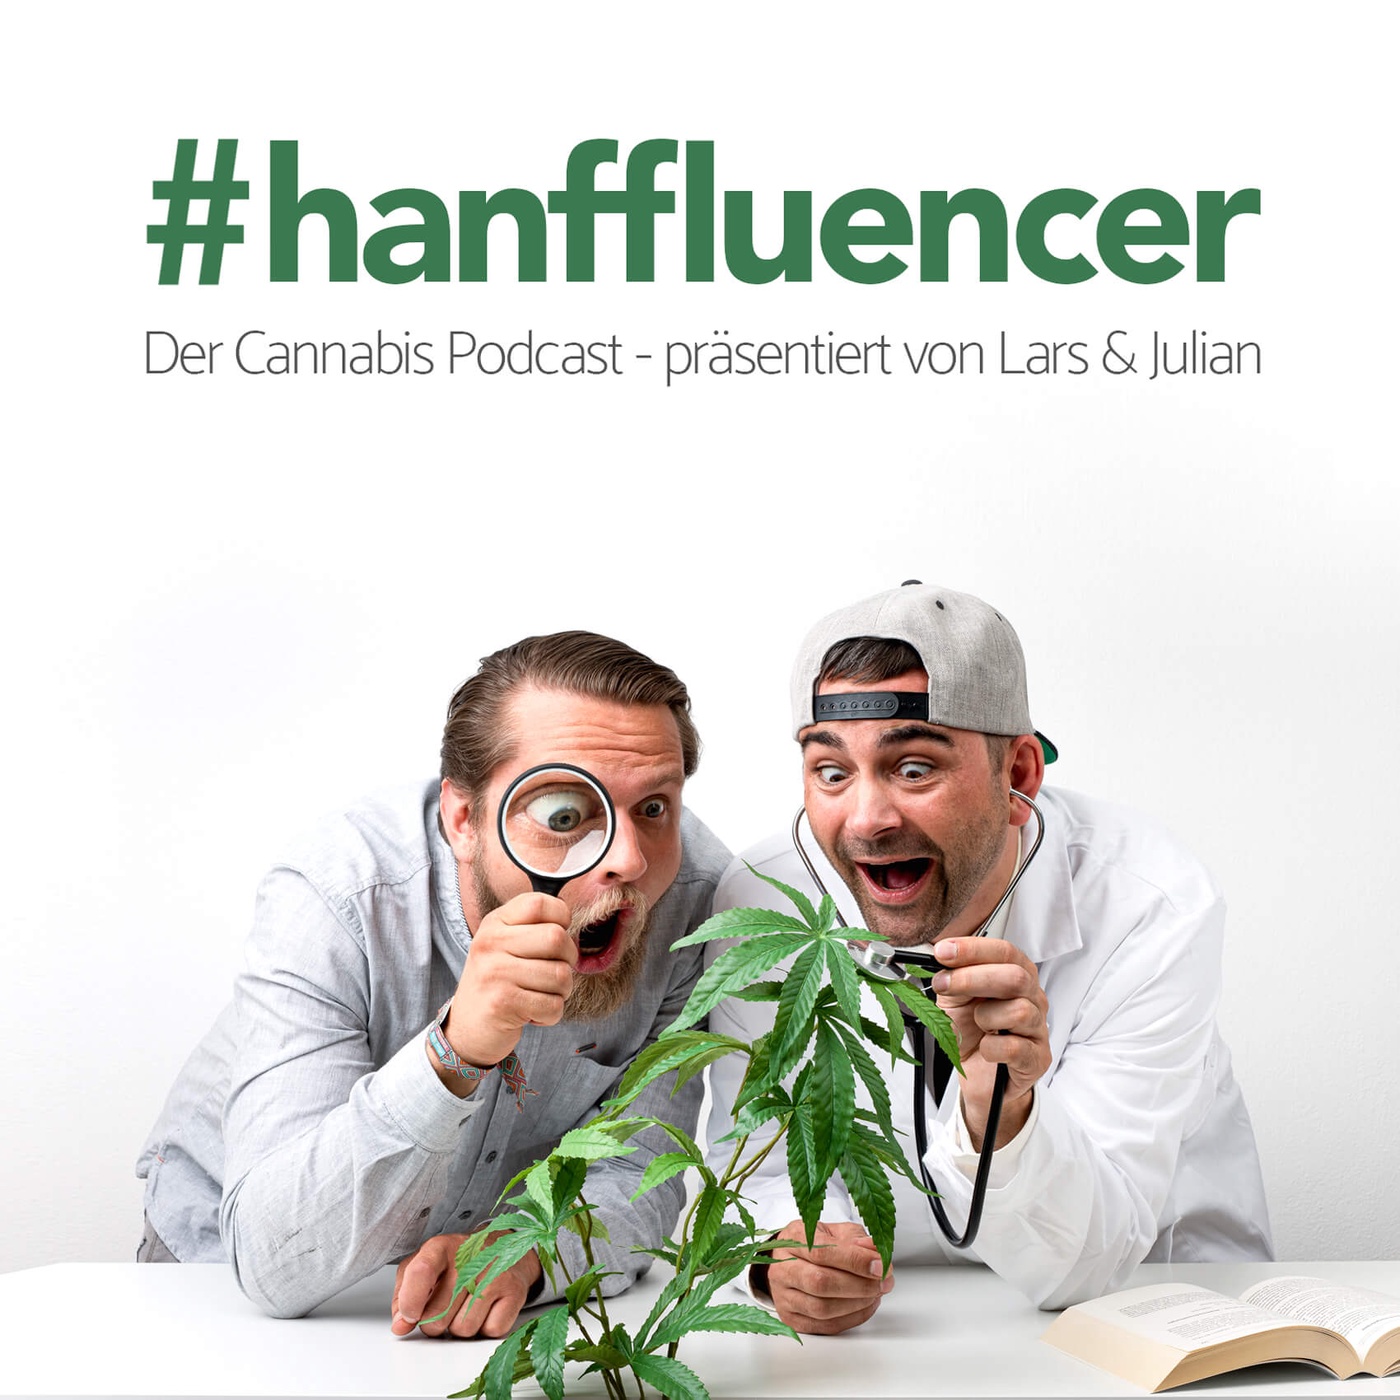 #hanffluencer - der Cannabis Podcast